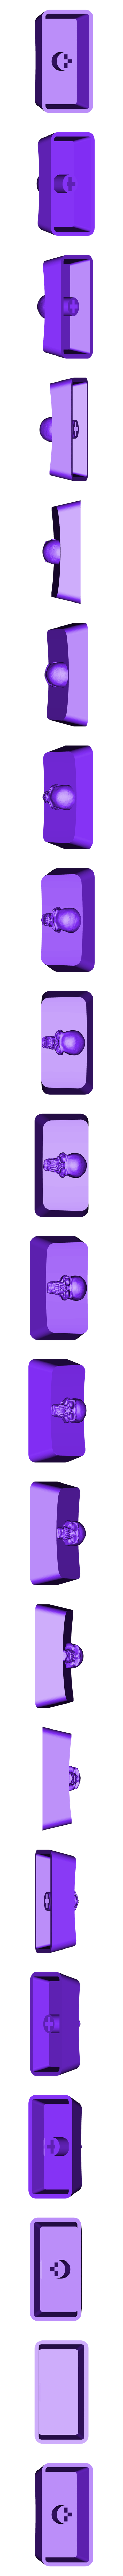 fn-skull.stl Télécharger fichier STL gratuit Cherry MX KeyCaps • Design à imprimer en 3D, Adafruit